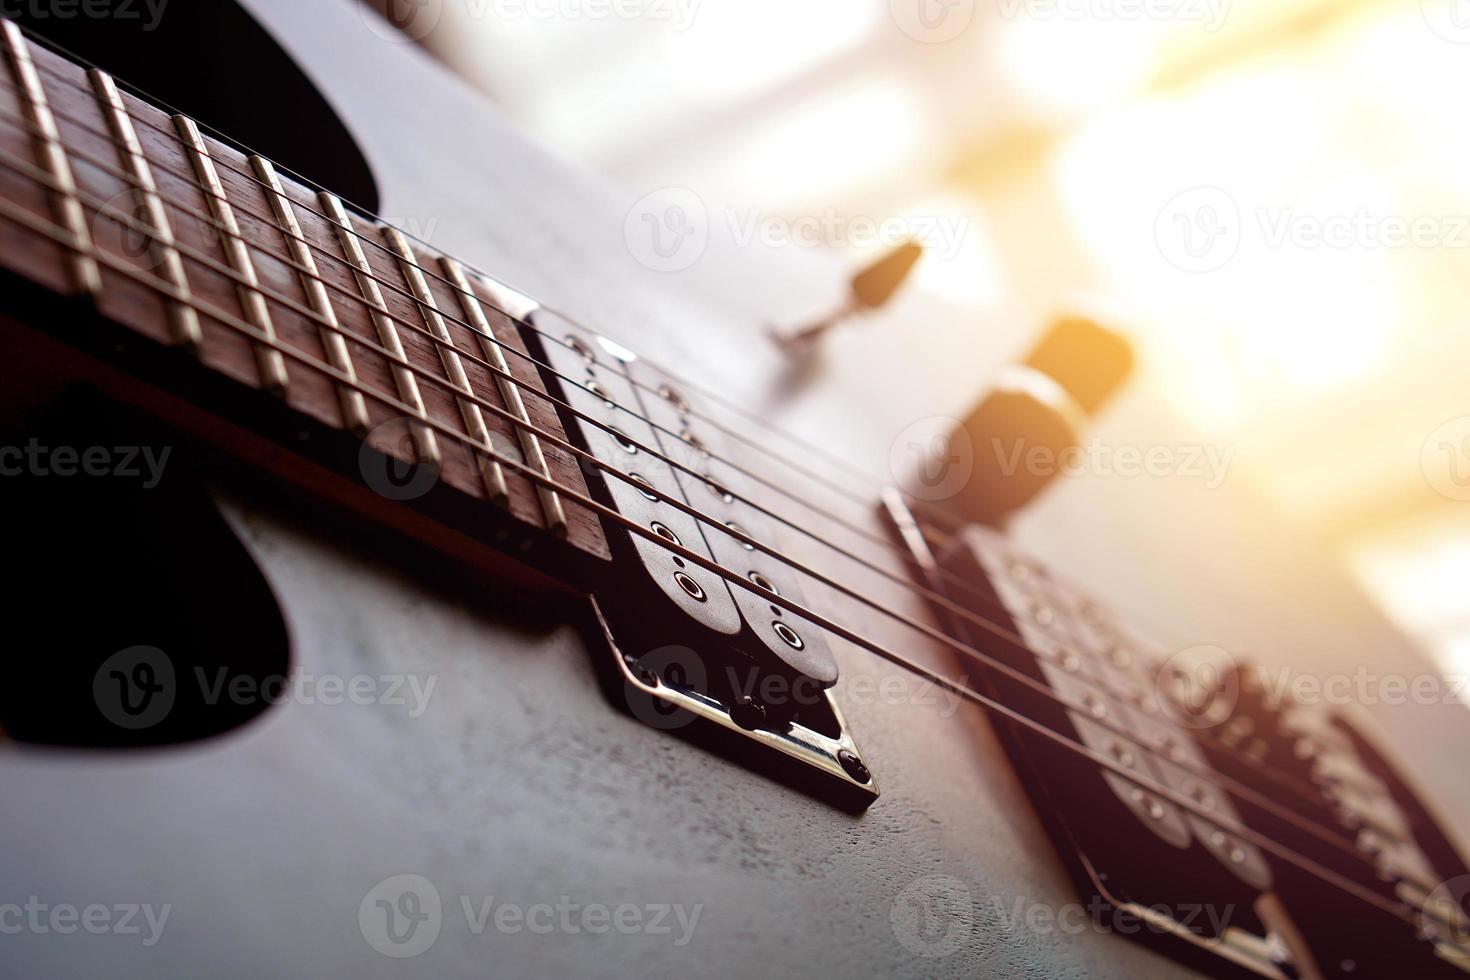 e-gitarre, verwendet, um musik und noten zu spielen, um ein lied zu singen, makro abstrakt foto